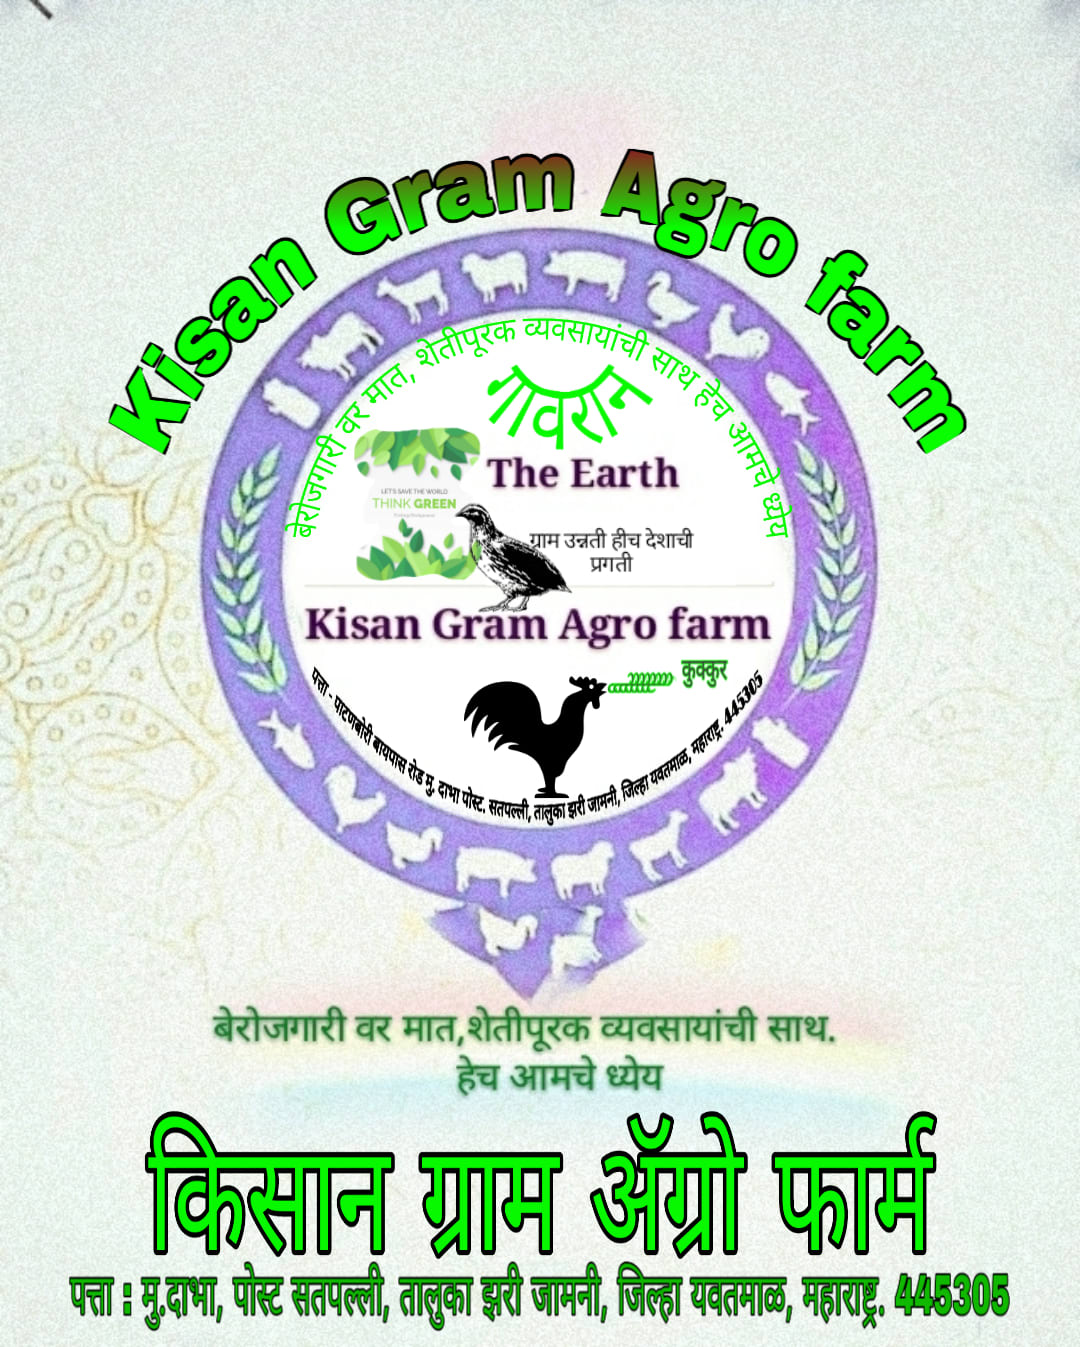 Kisan Gram Agro Farm